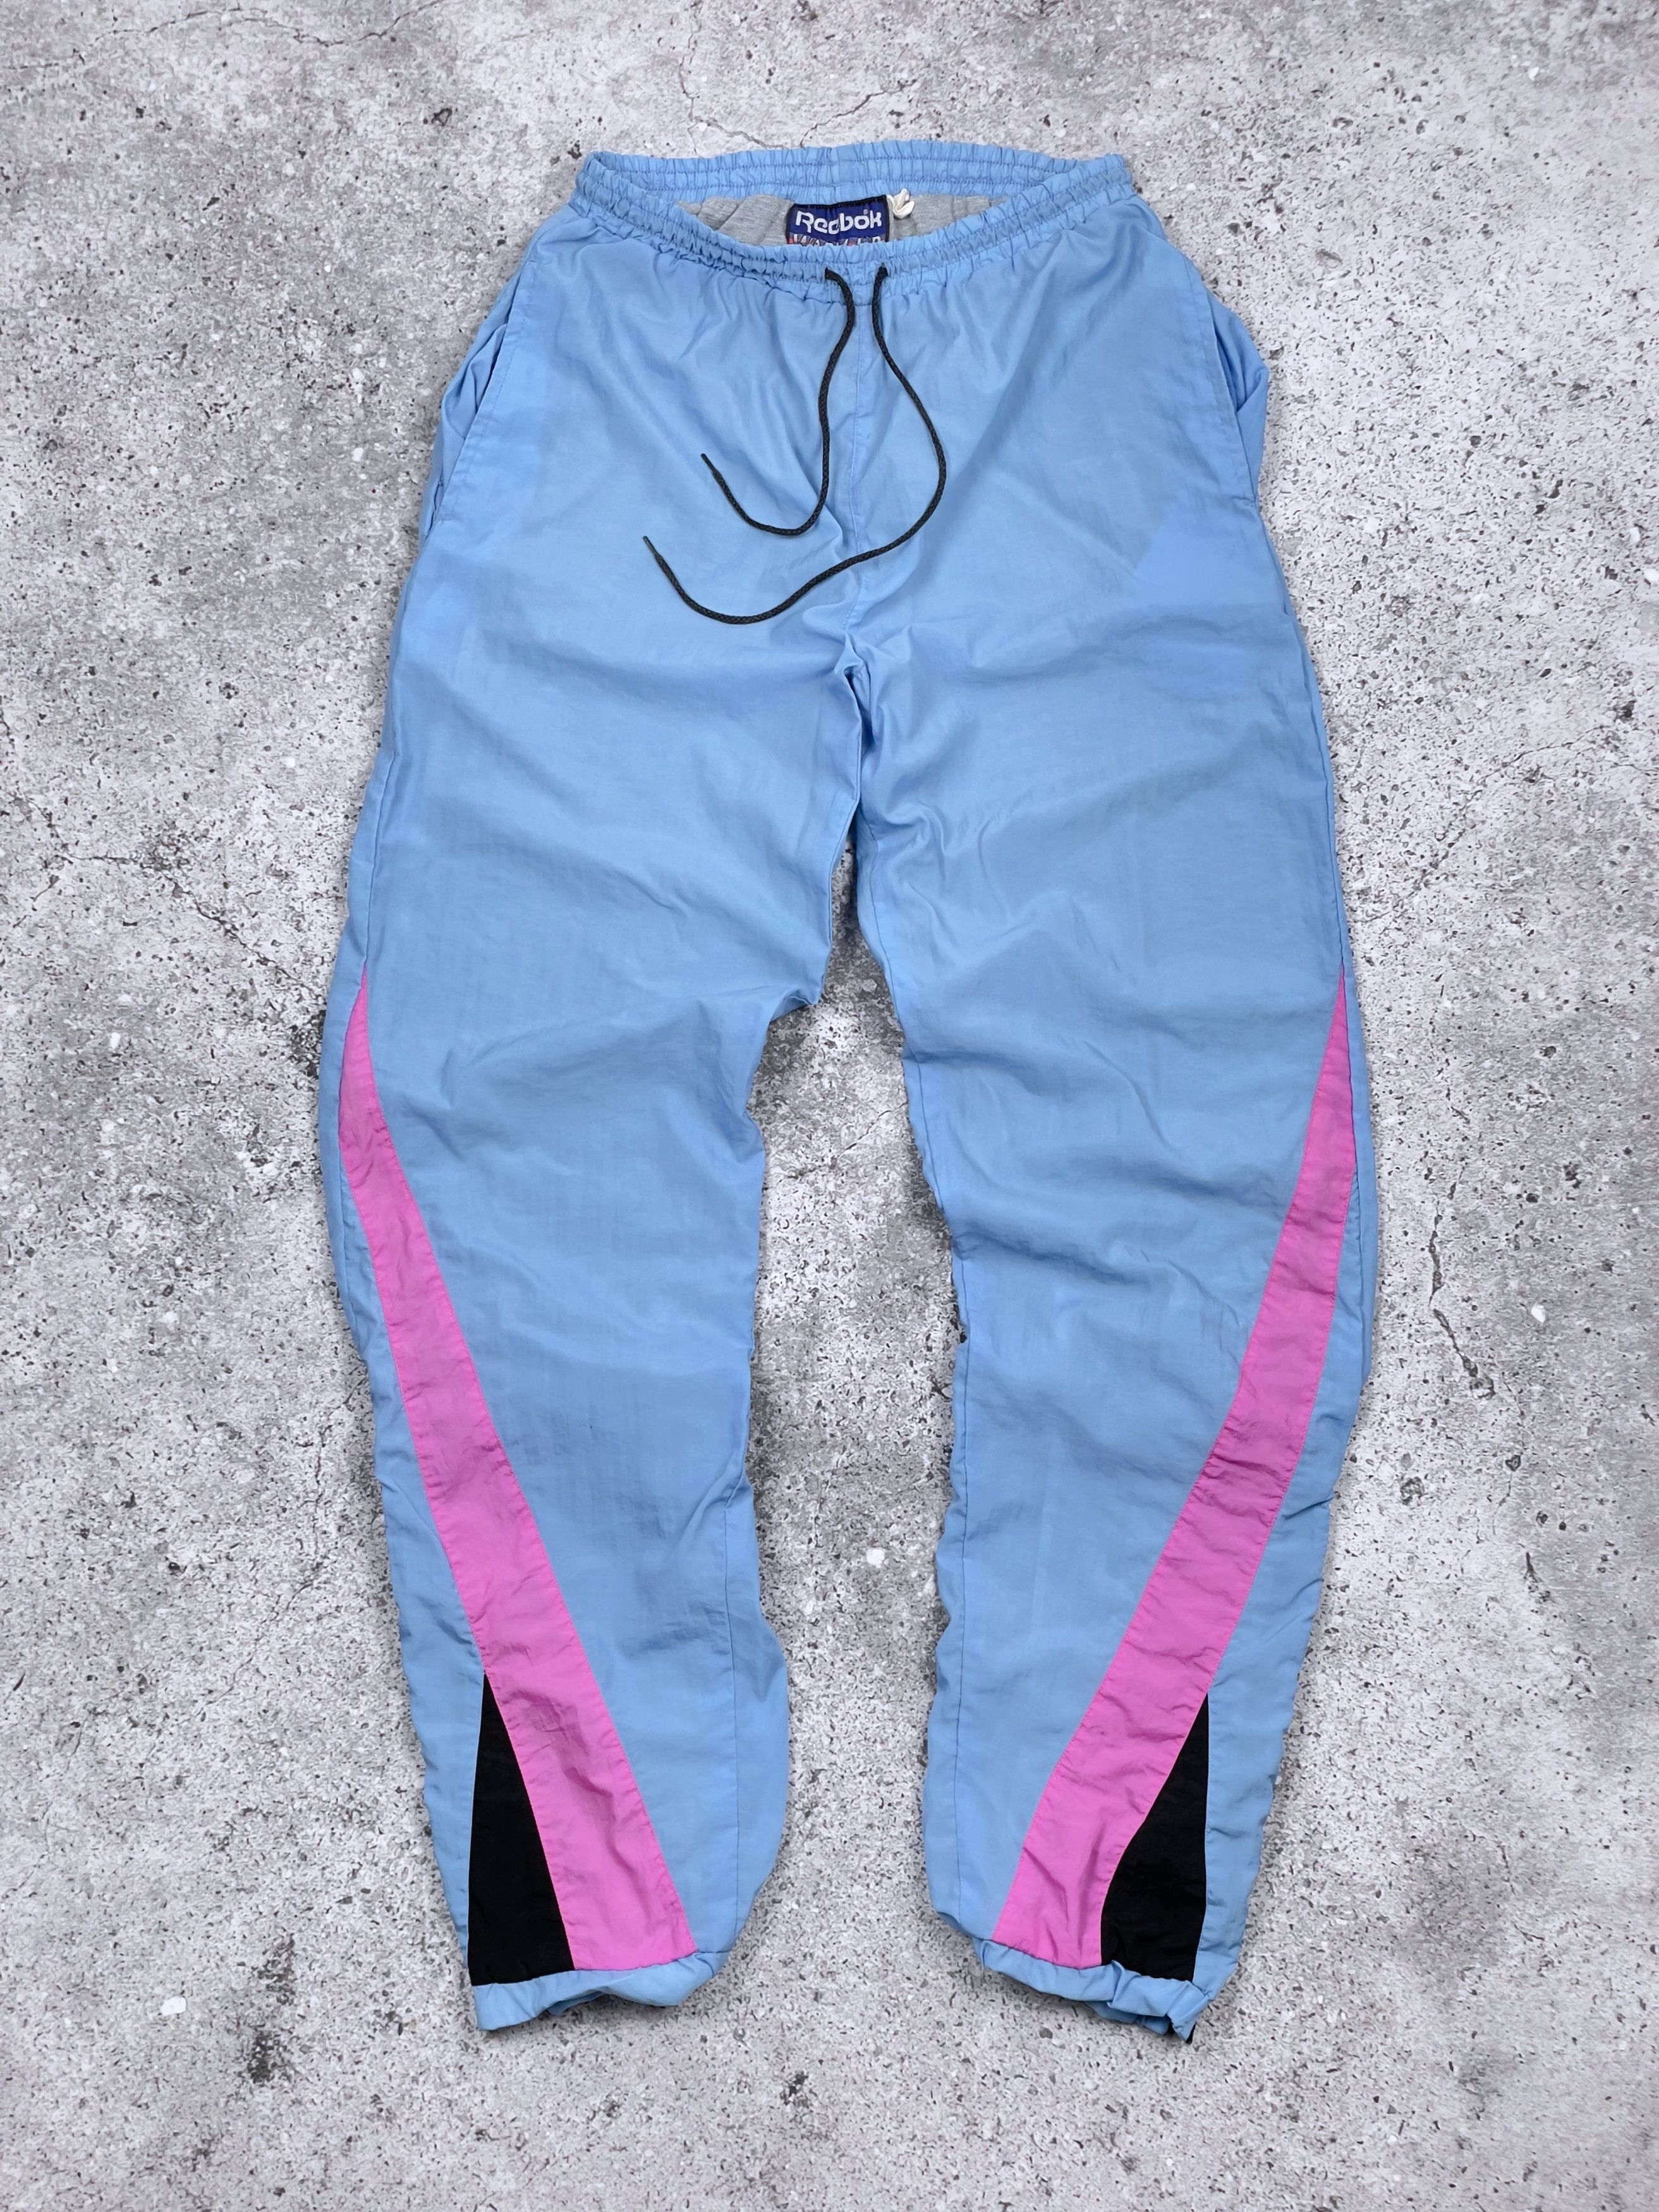 Vintage 80s Reebok Nylon Track Jacket Set Jacket + Pants Size US M / EU 48-50 / 2 - 3 Thumbnail